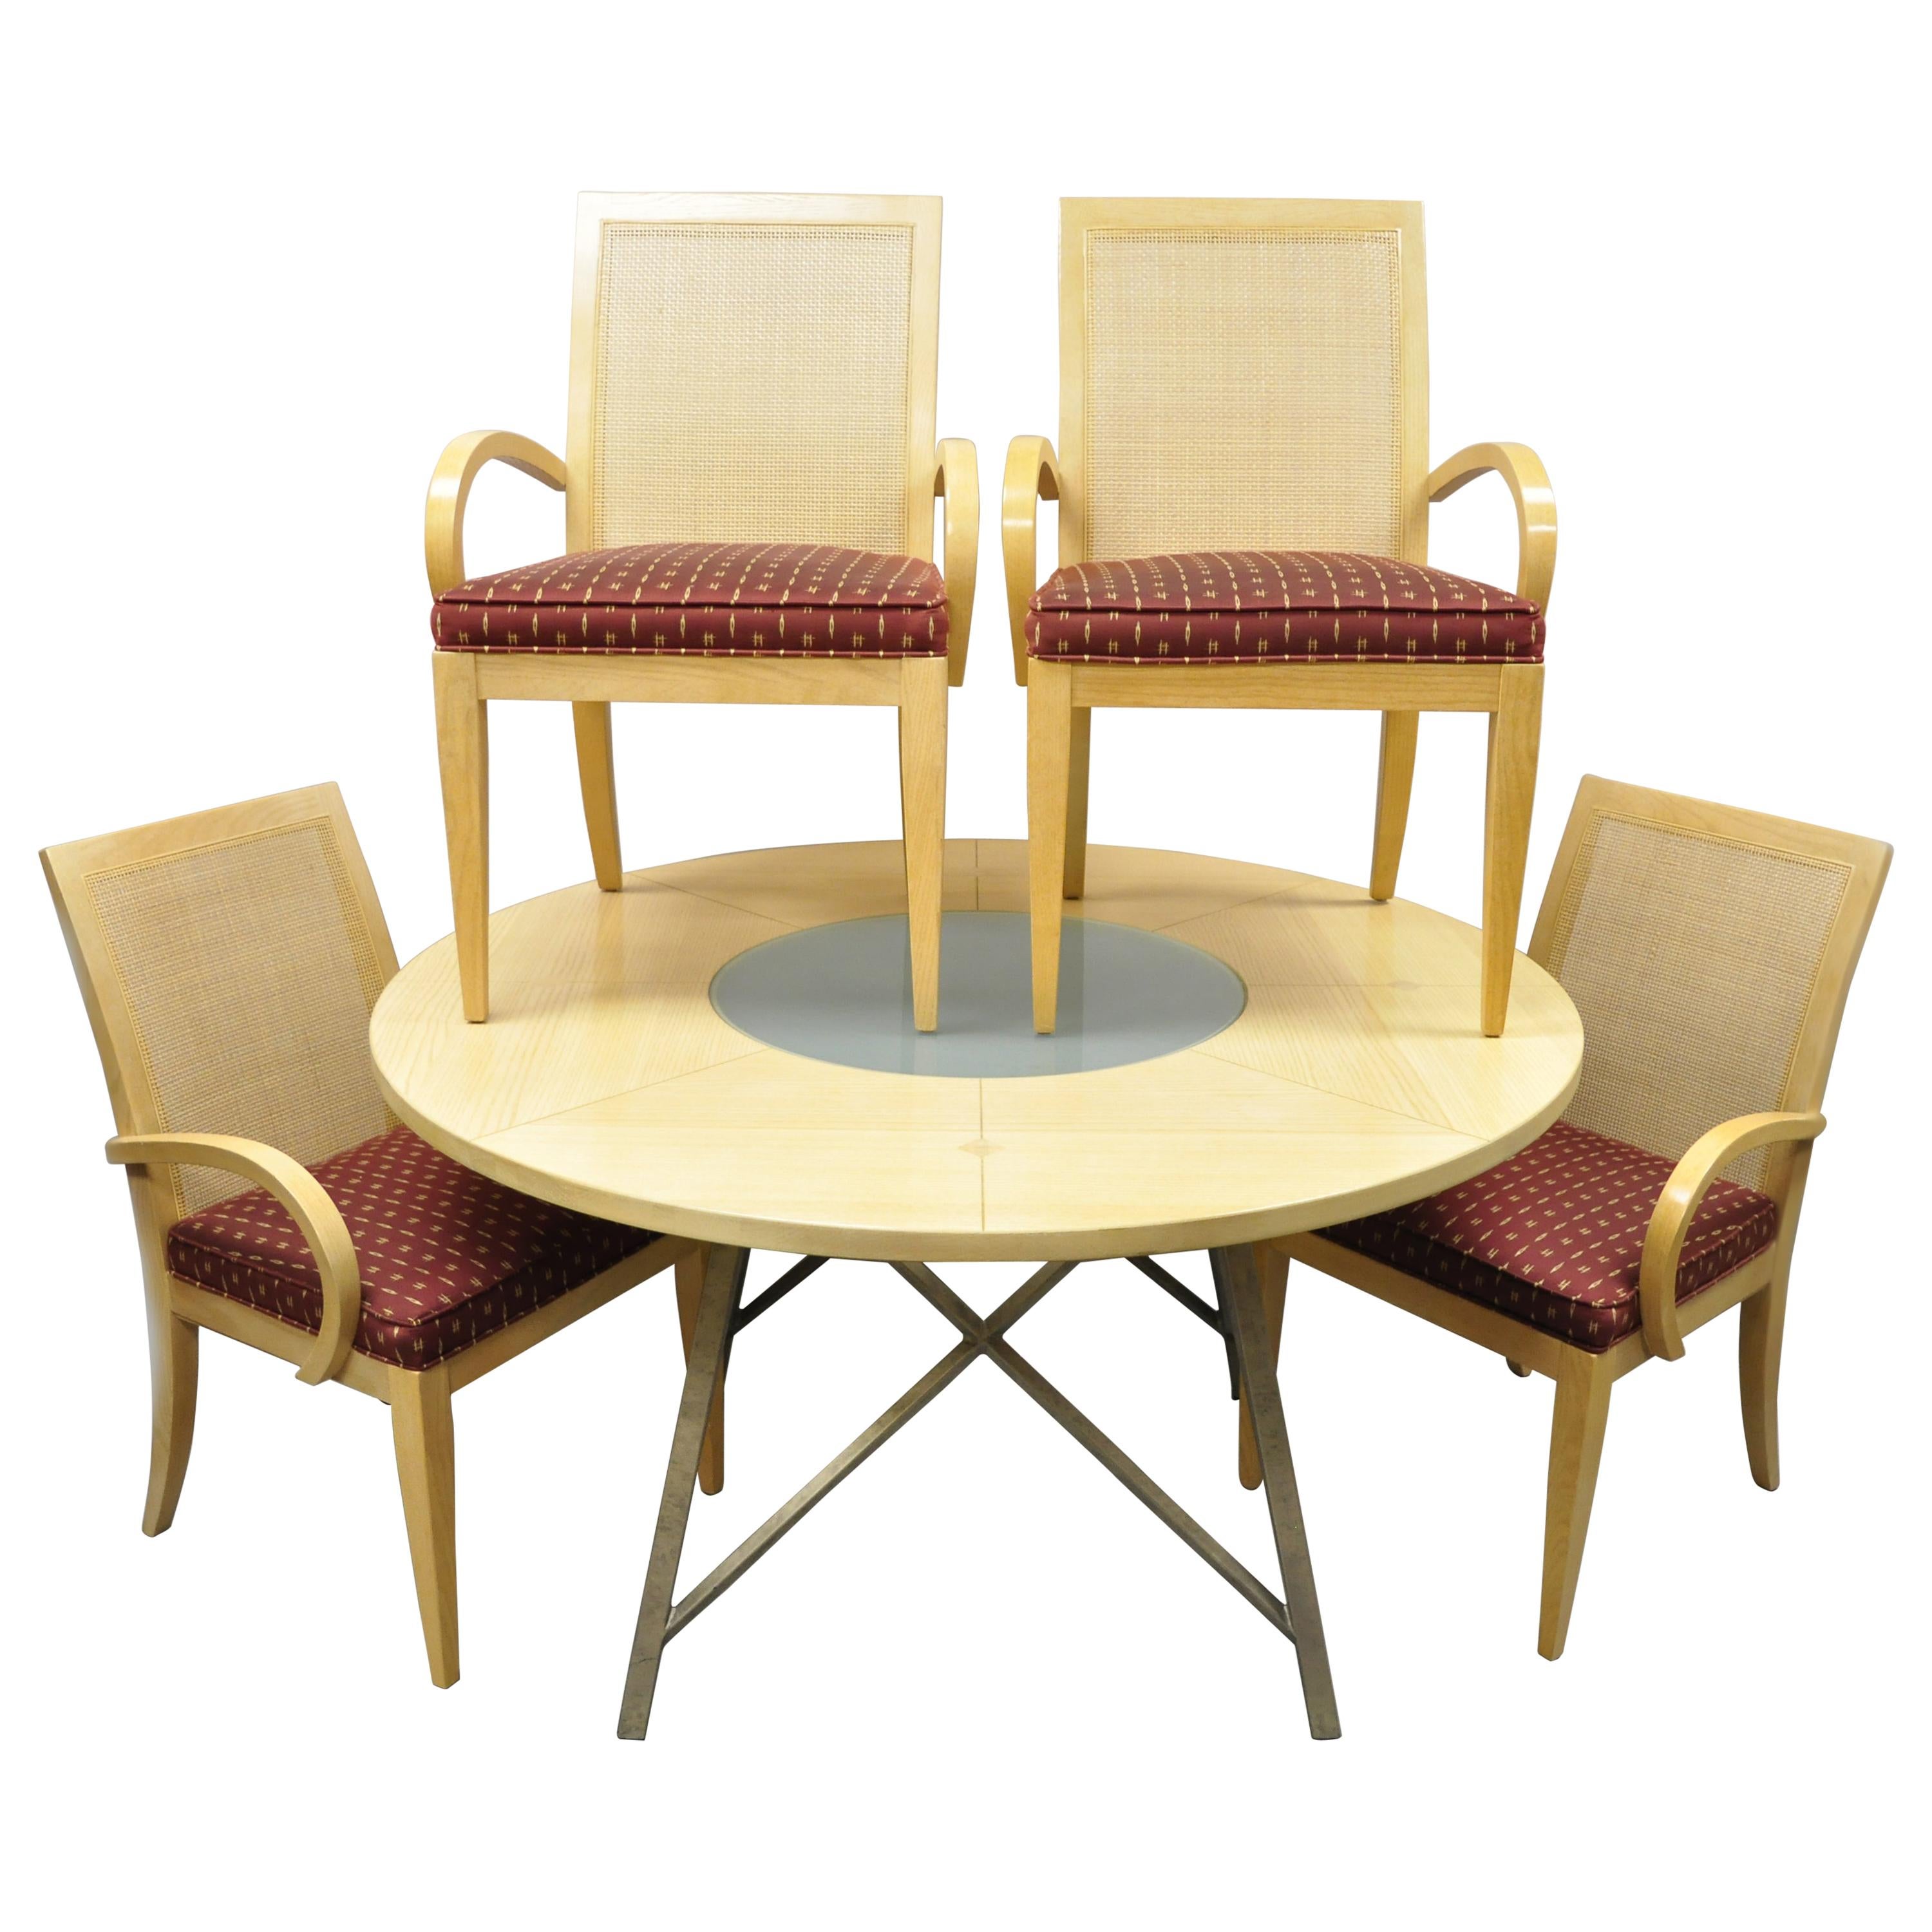 Drexel Heritage Studio Zeitgenössisches modernes Esstisch-Set aus blondem Holz, 4 Stühle